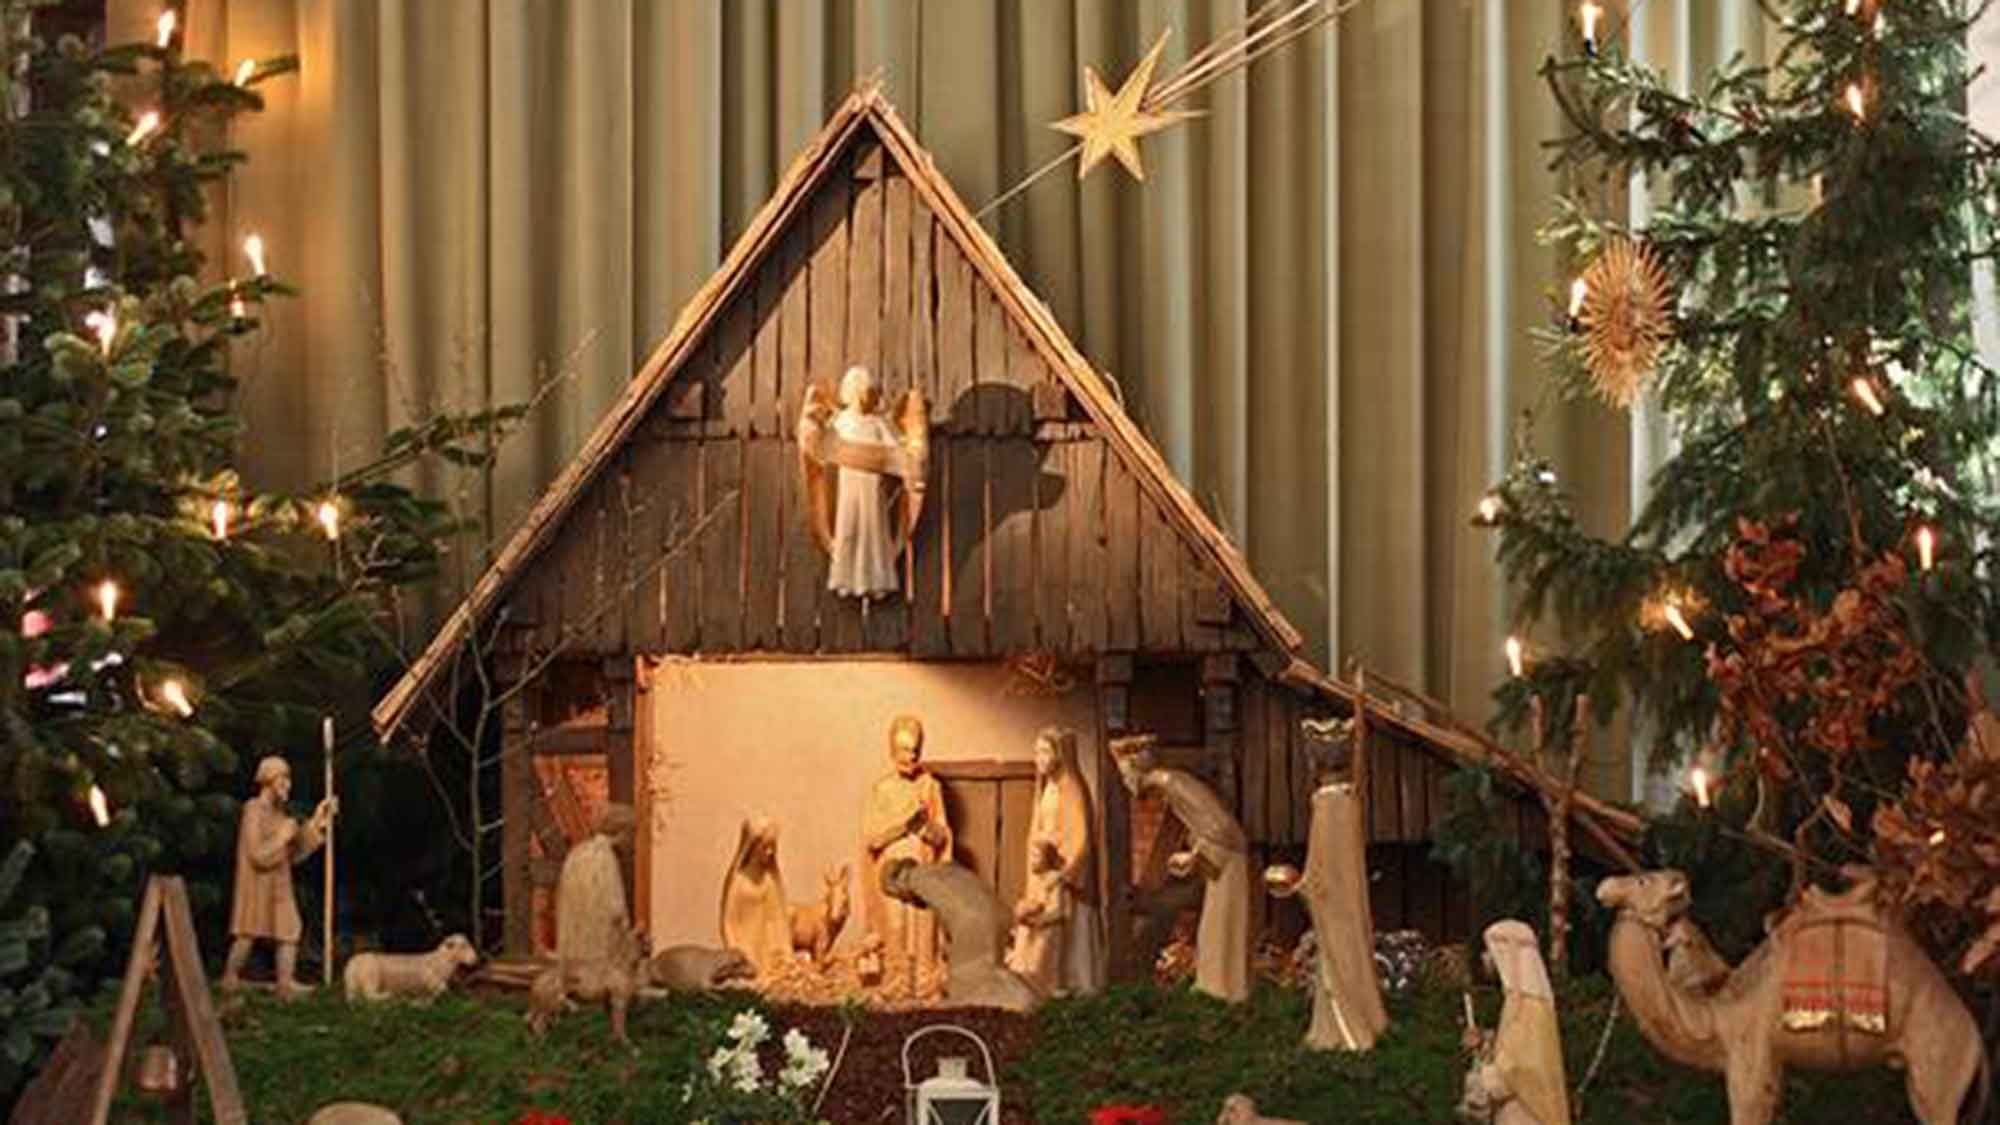 Sonntagsführung am 3. Dezember 2023 in Herzebrock Clarholz: Weihnachtliches in Herzebrock